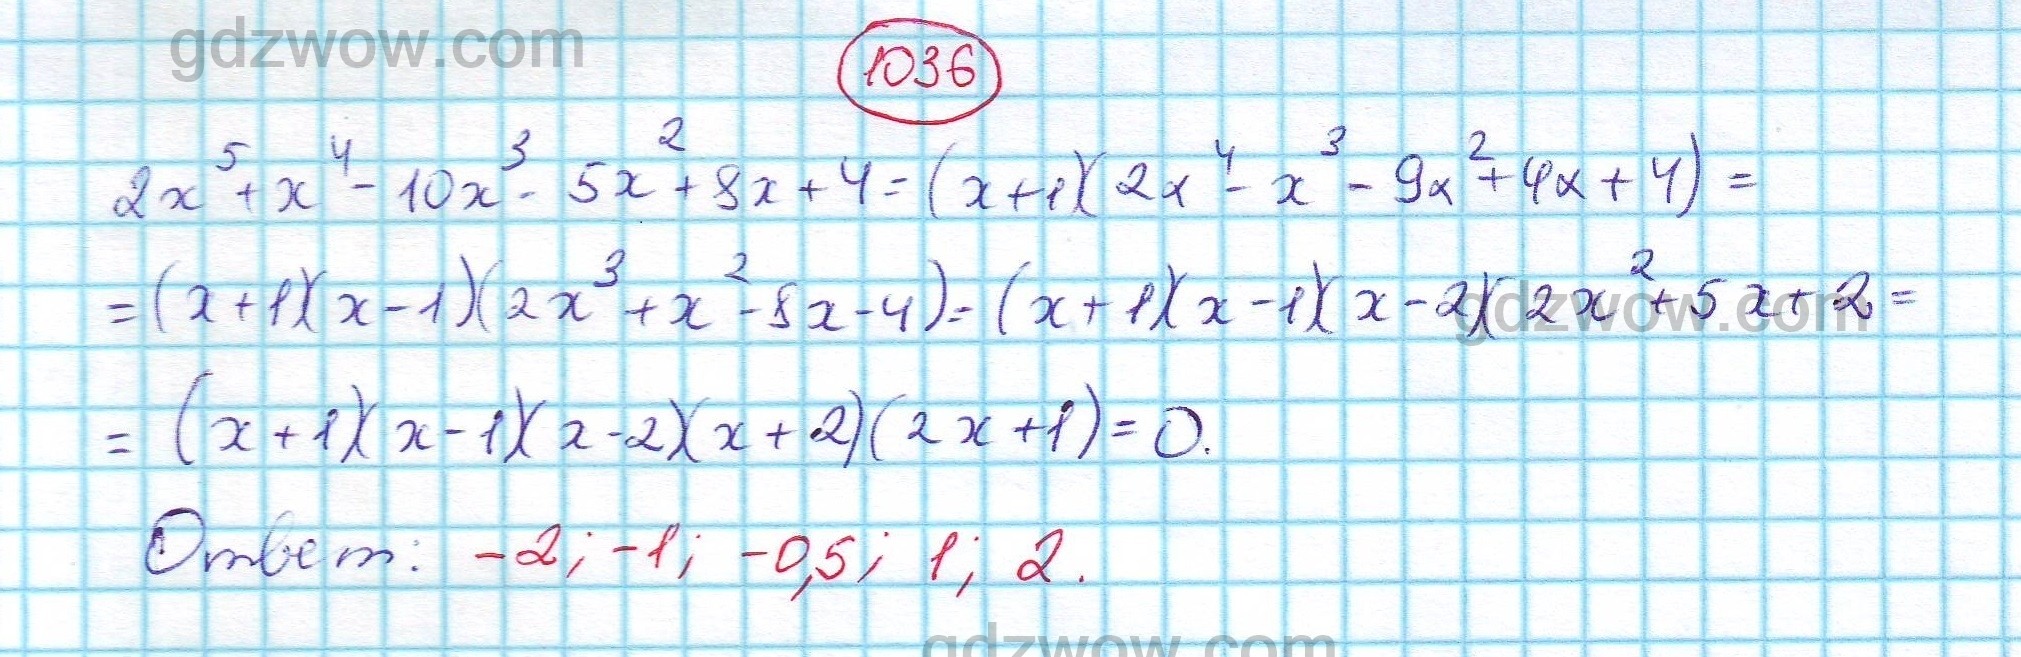 Математика 6 класс стр 223 номер 1036